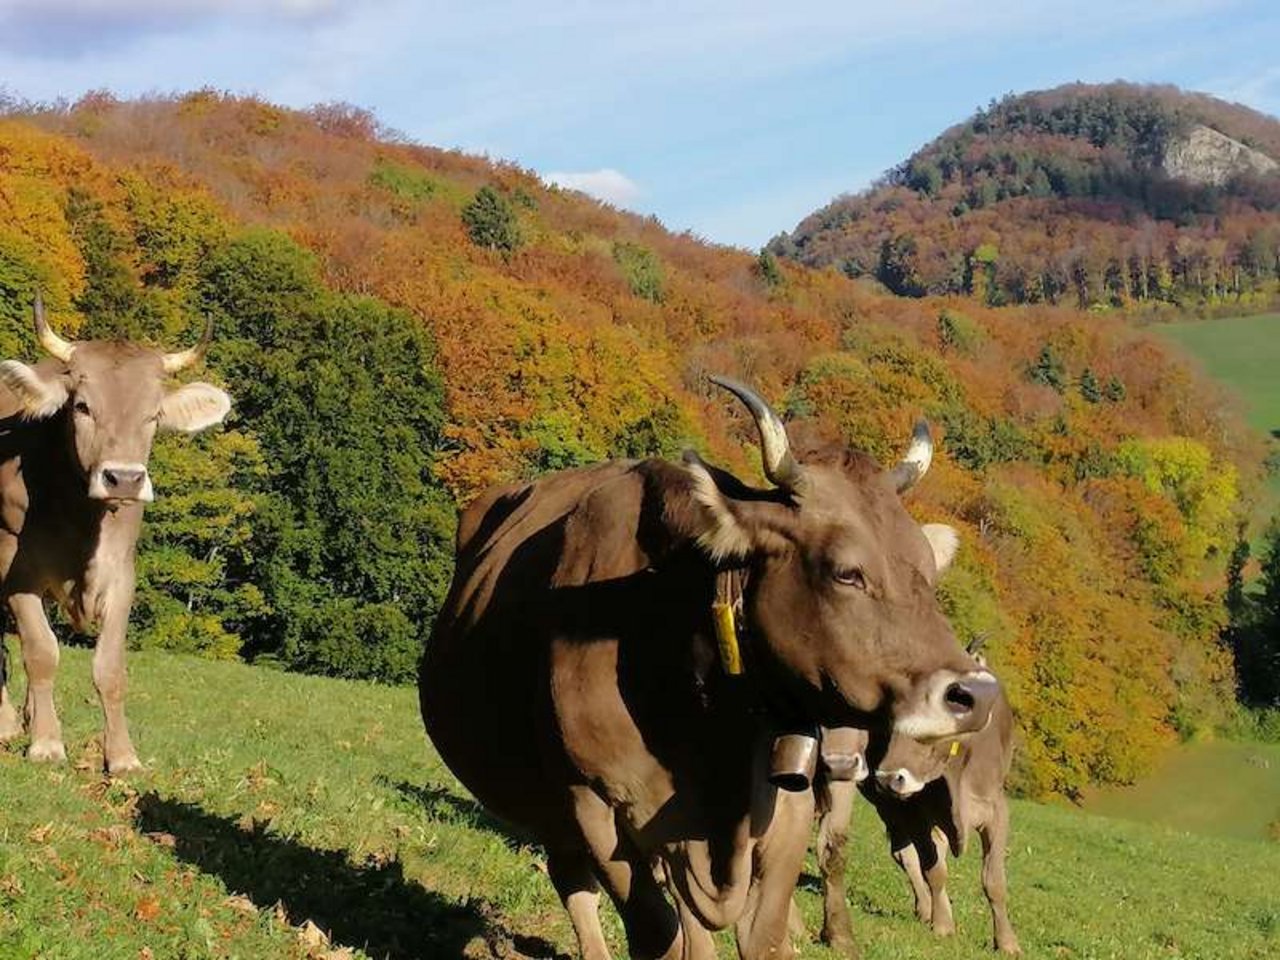 Zu Ehren des 10. Geburtstags von Kuh Mini lädt der Berghof Rohr zu einer Familienfeier. (Bilder zVg)